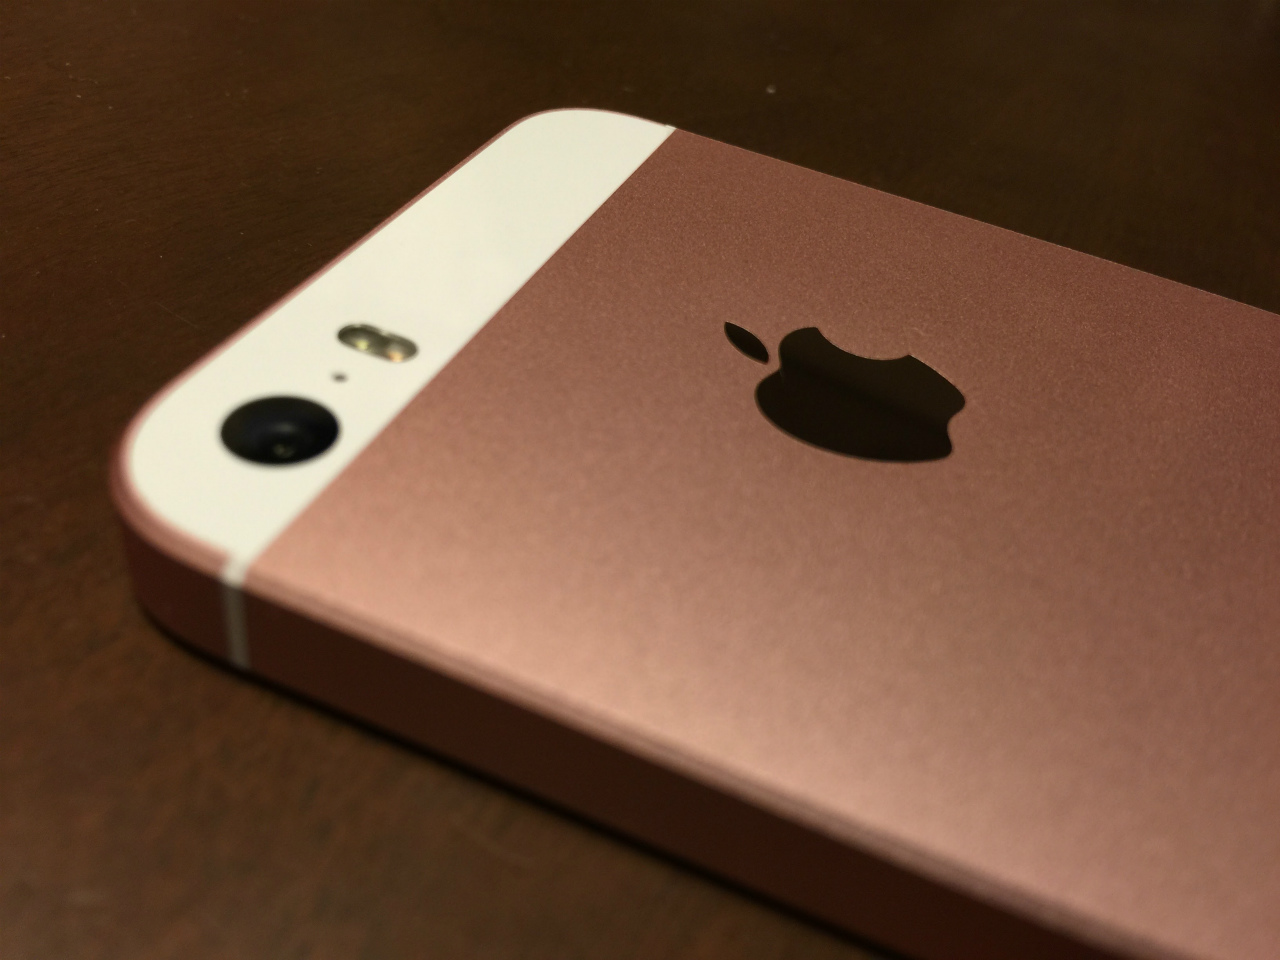 [かぶ] SIMフリー版 iPhone SE Rose Gold 64GBを入手。Apple Storeで購入したSIMフリー端末ながら